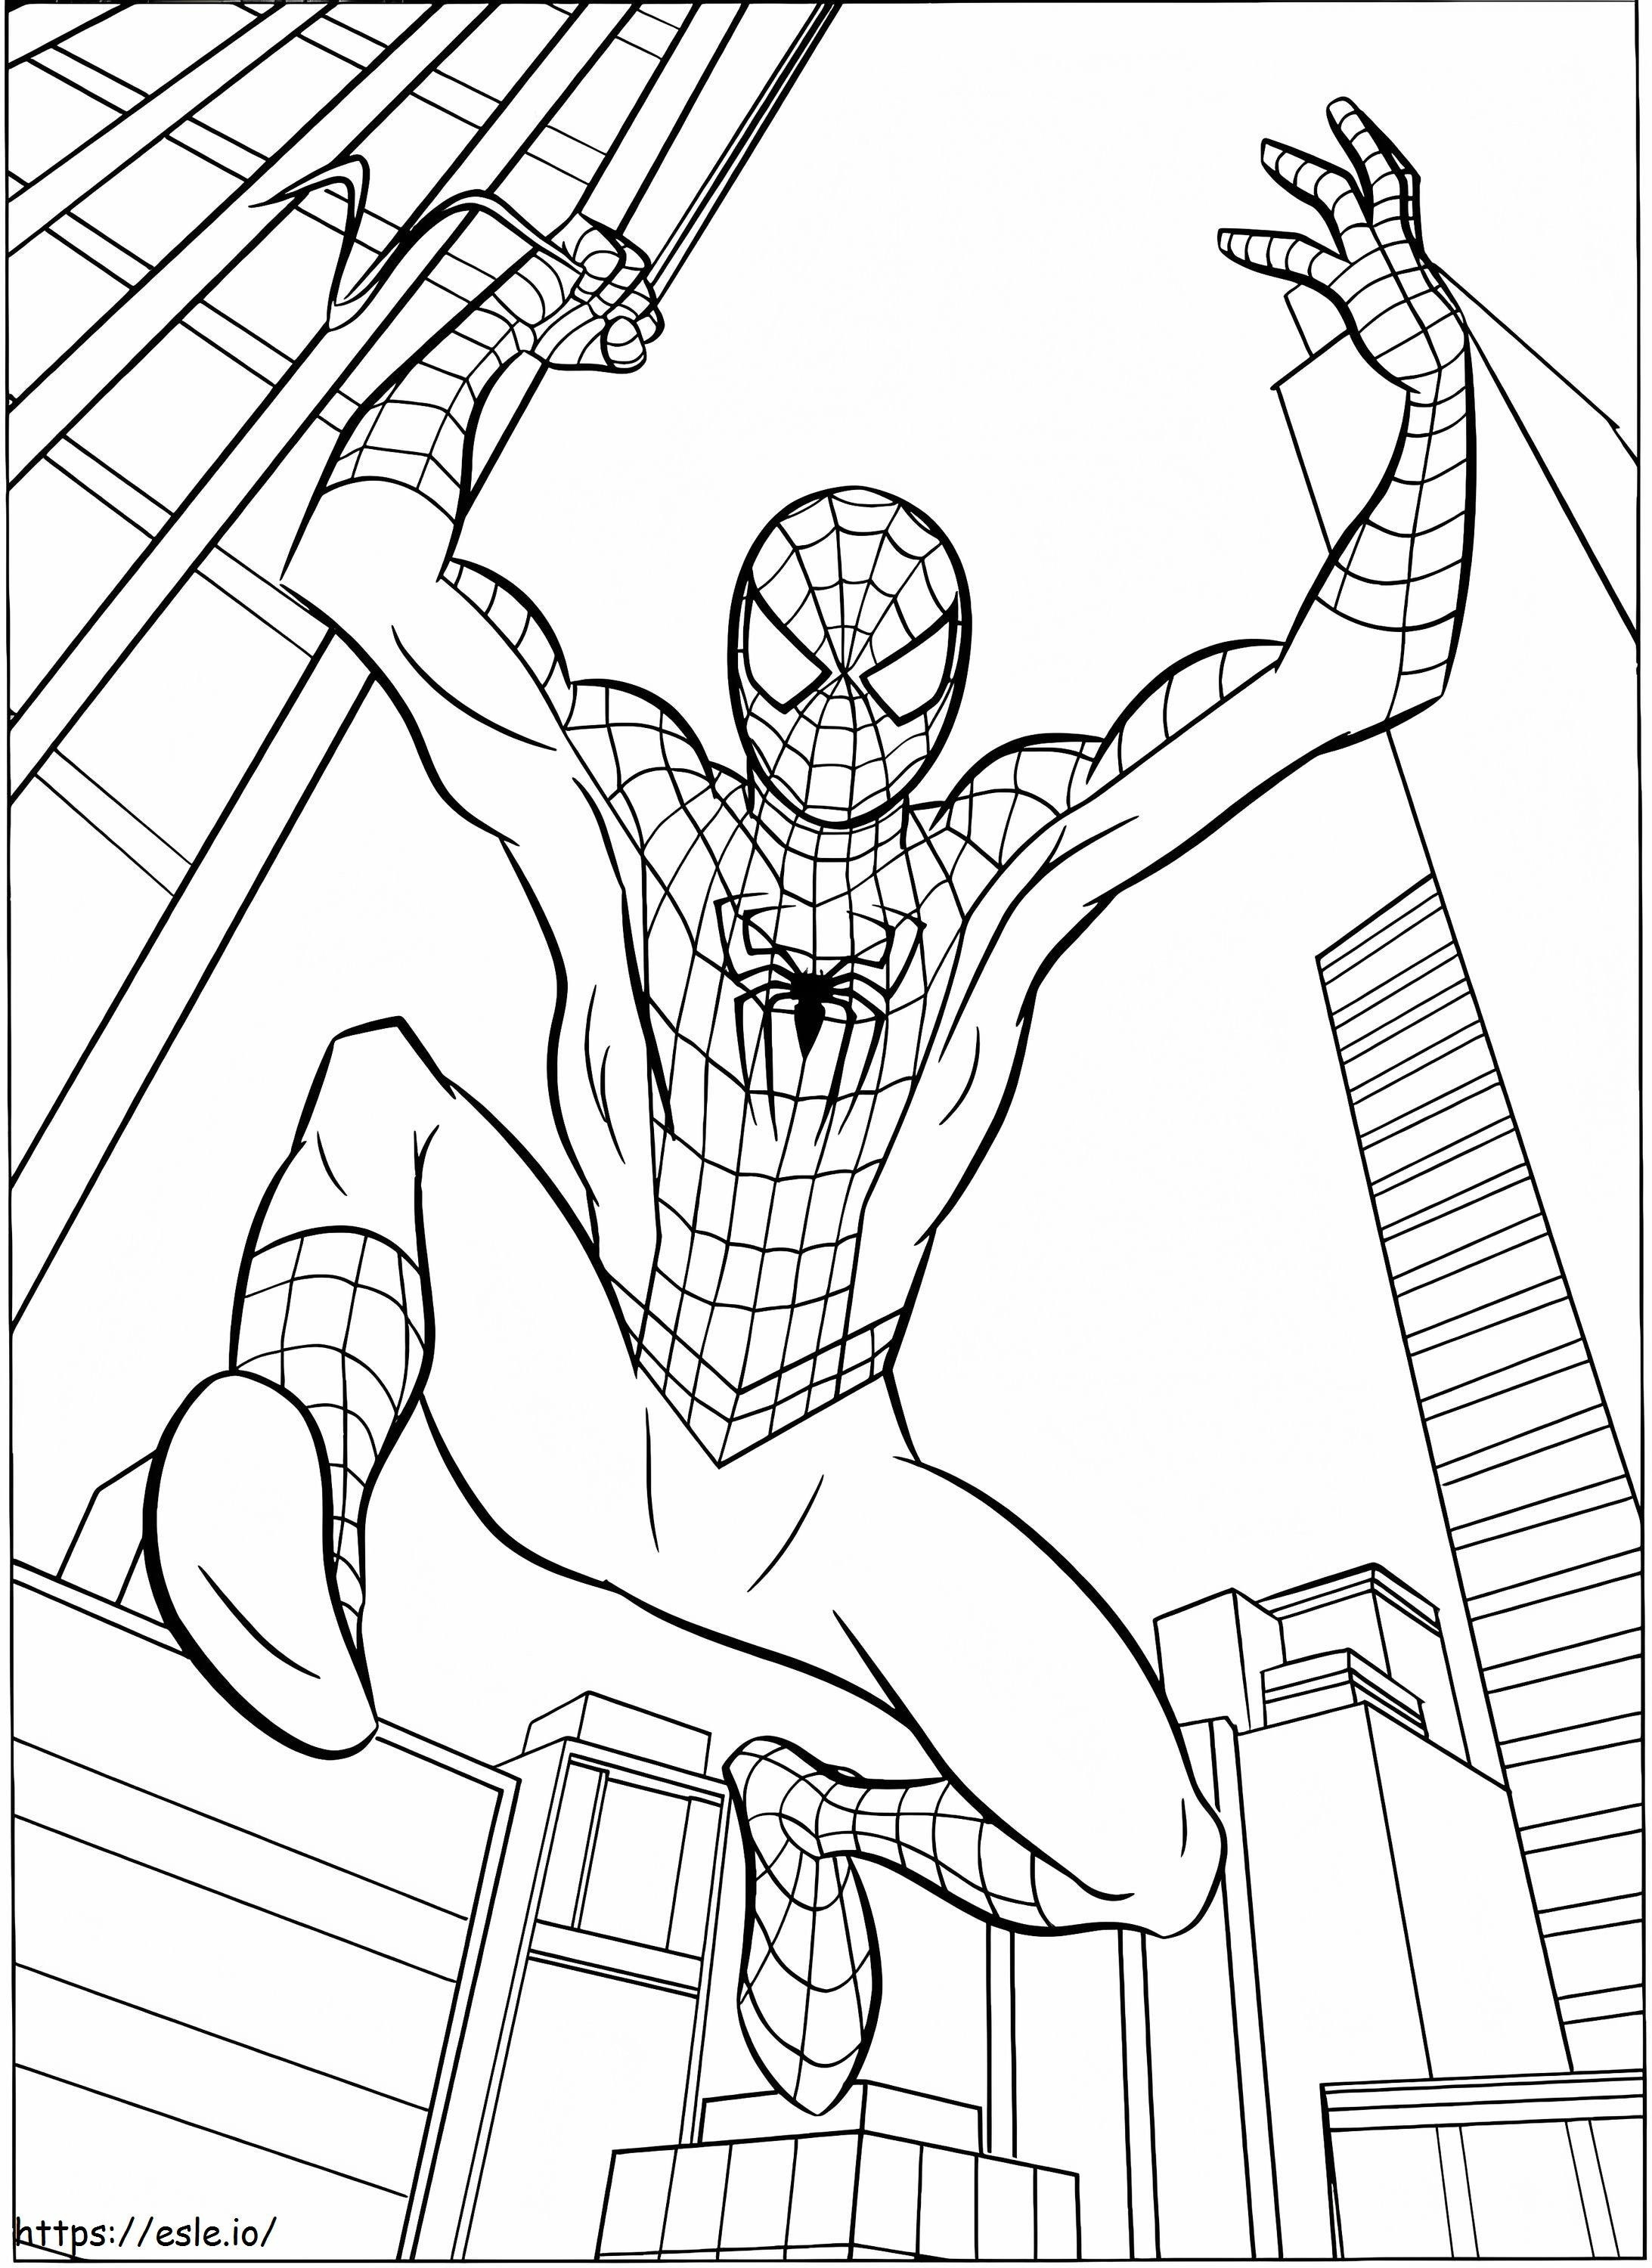 Coloriage Action Spider-Man à imprimer dessin